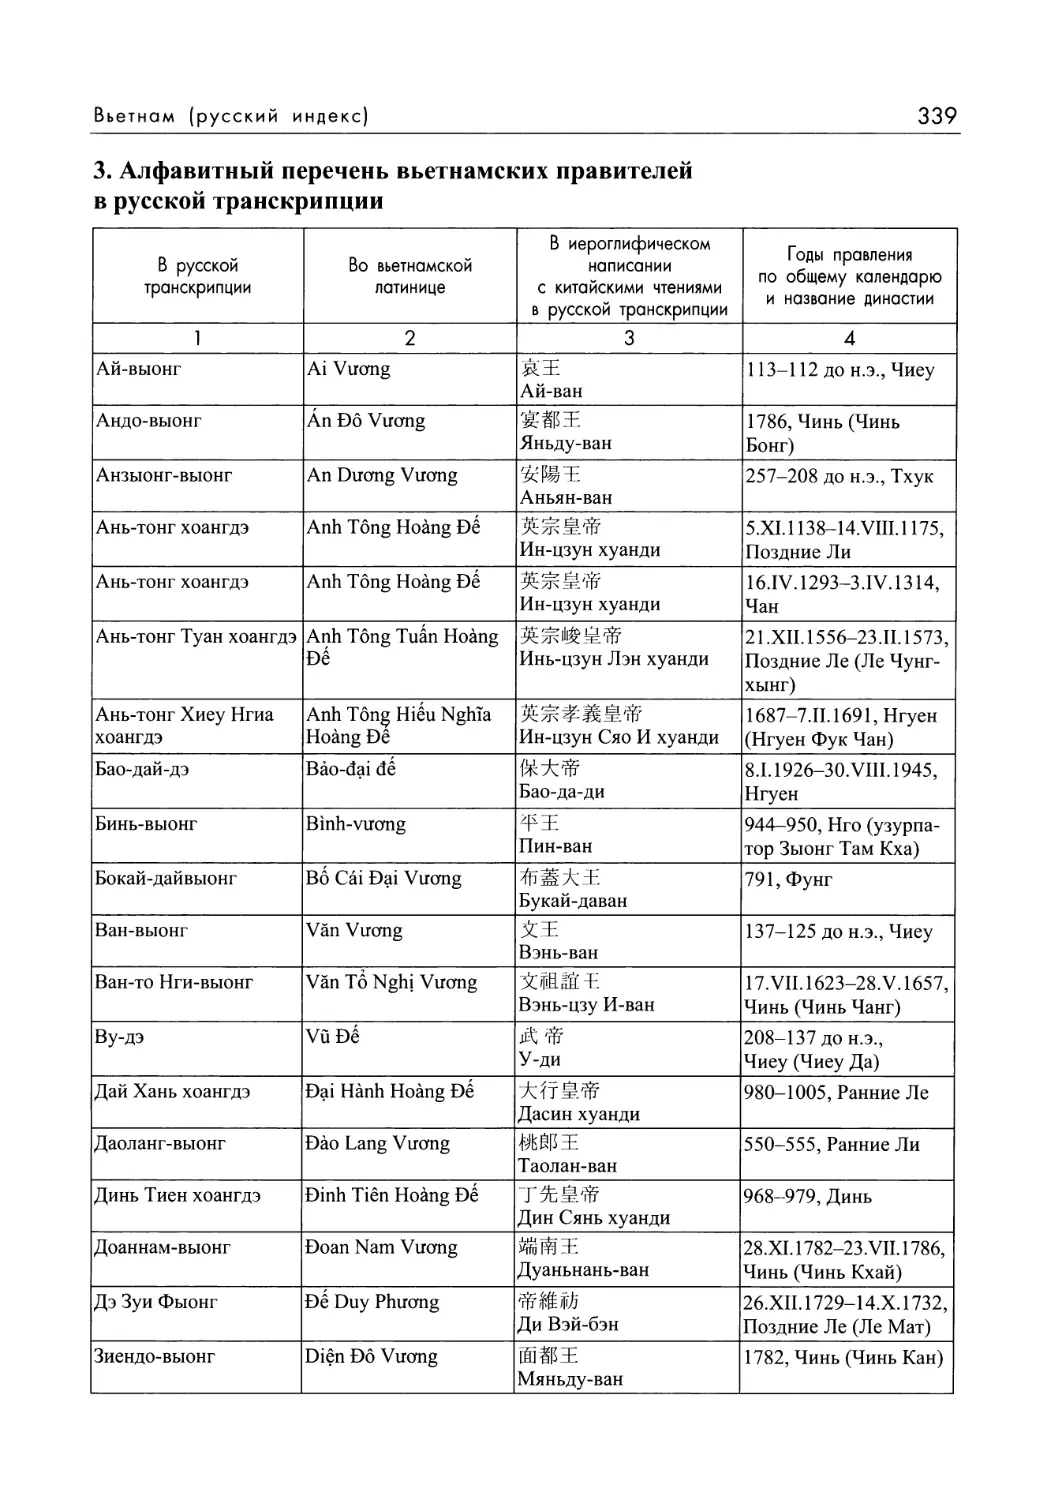 3. Алфавитный перечень вьетнамских правителей в русской транскрипции